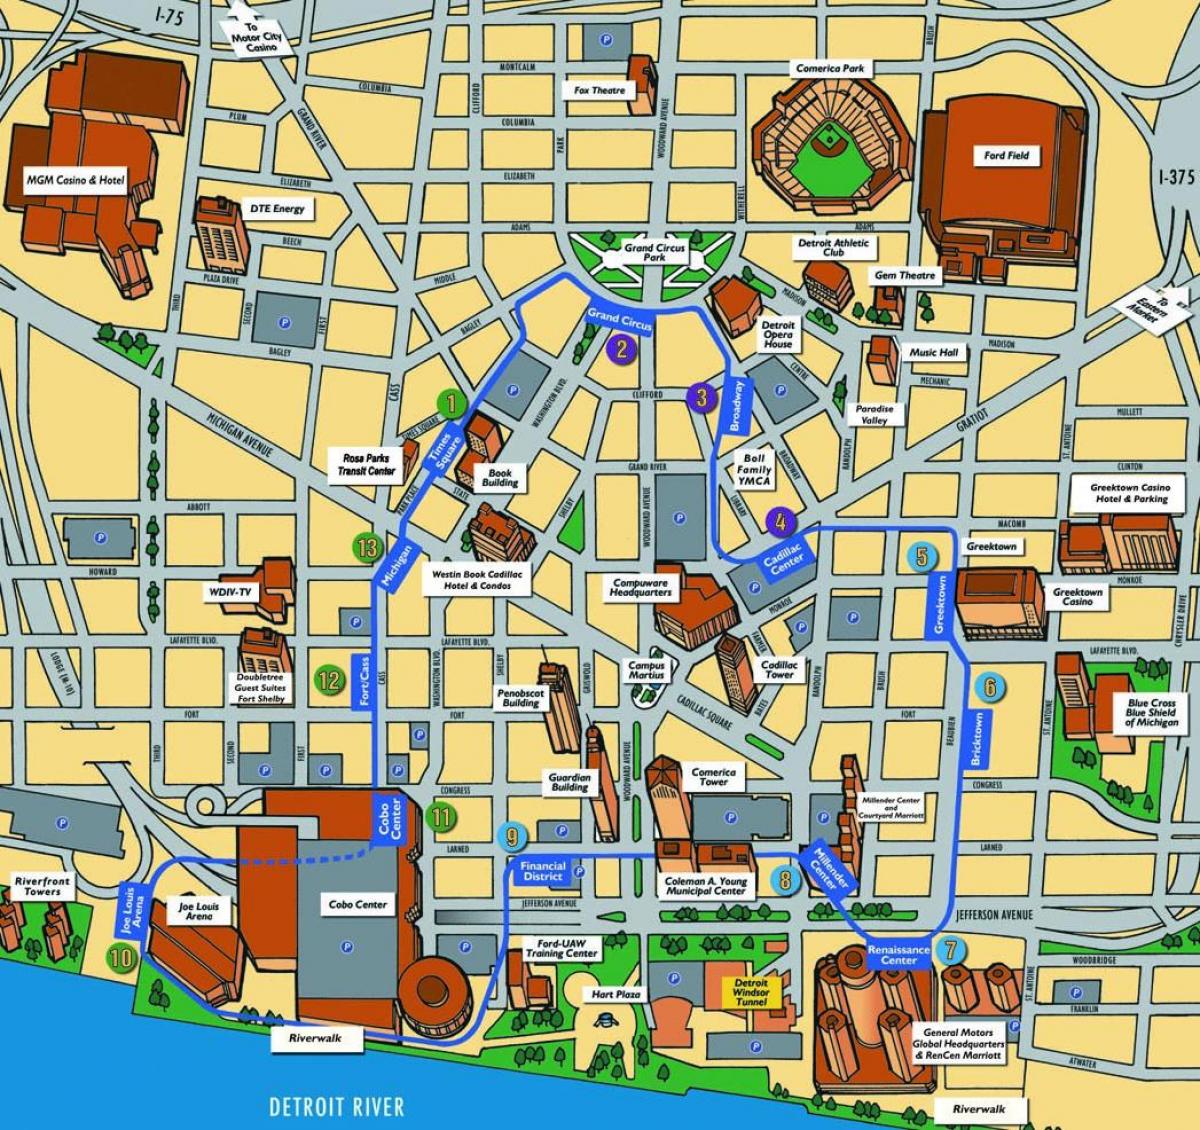 Detroit atrakcije mapu